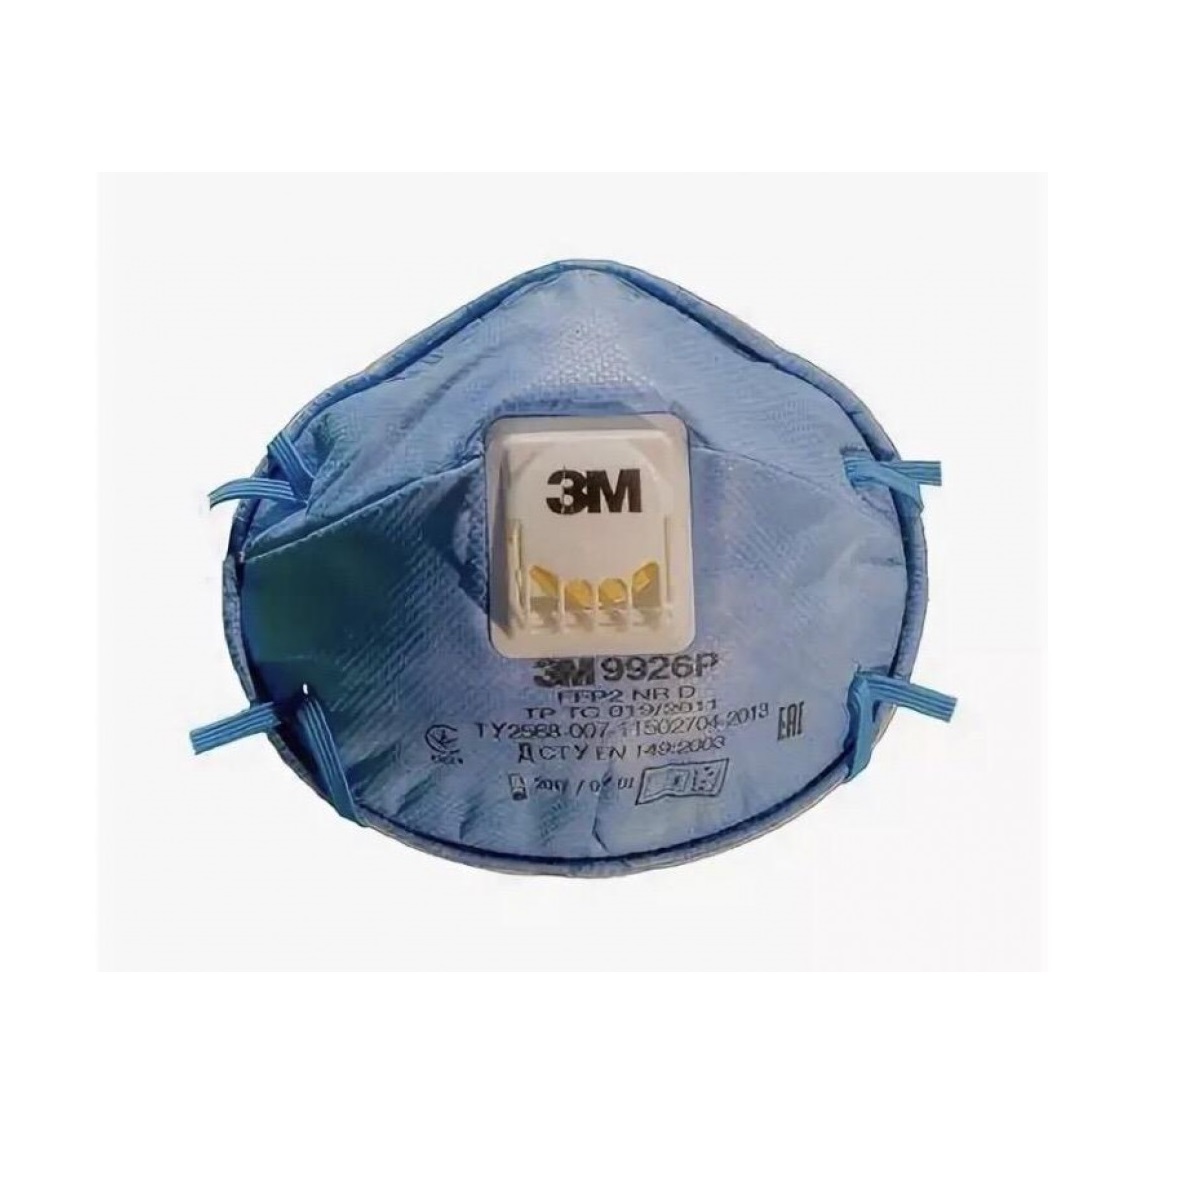 Полумаска фильтрующая с доп. защитой от кислых газов и паров (респиратор), арт.9926